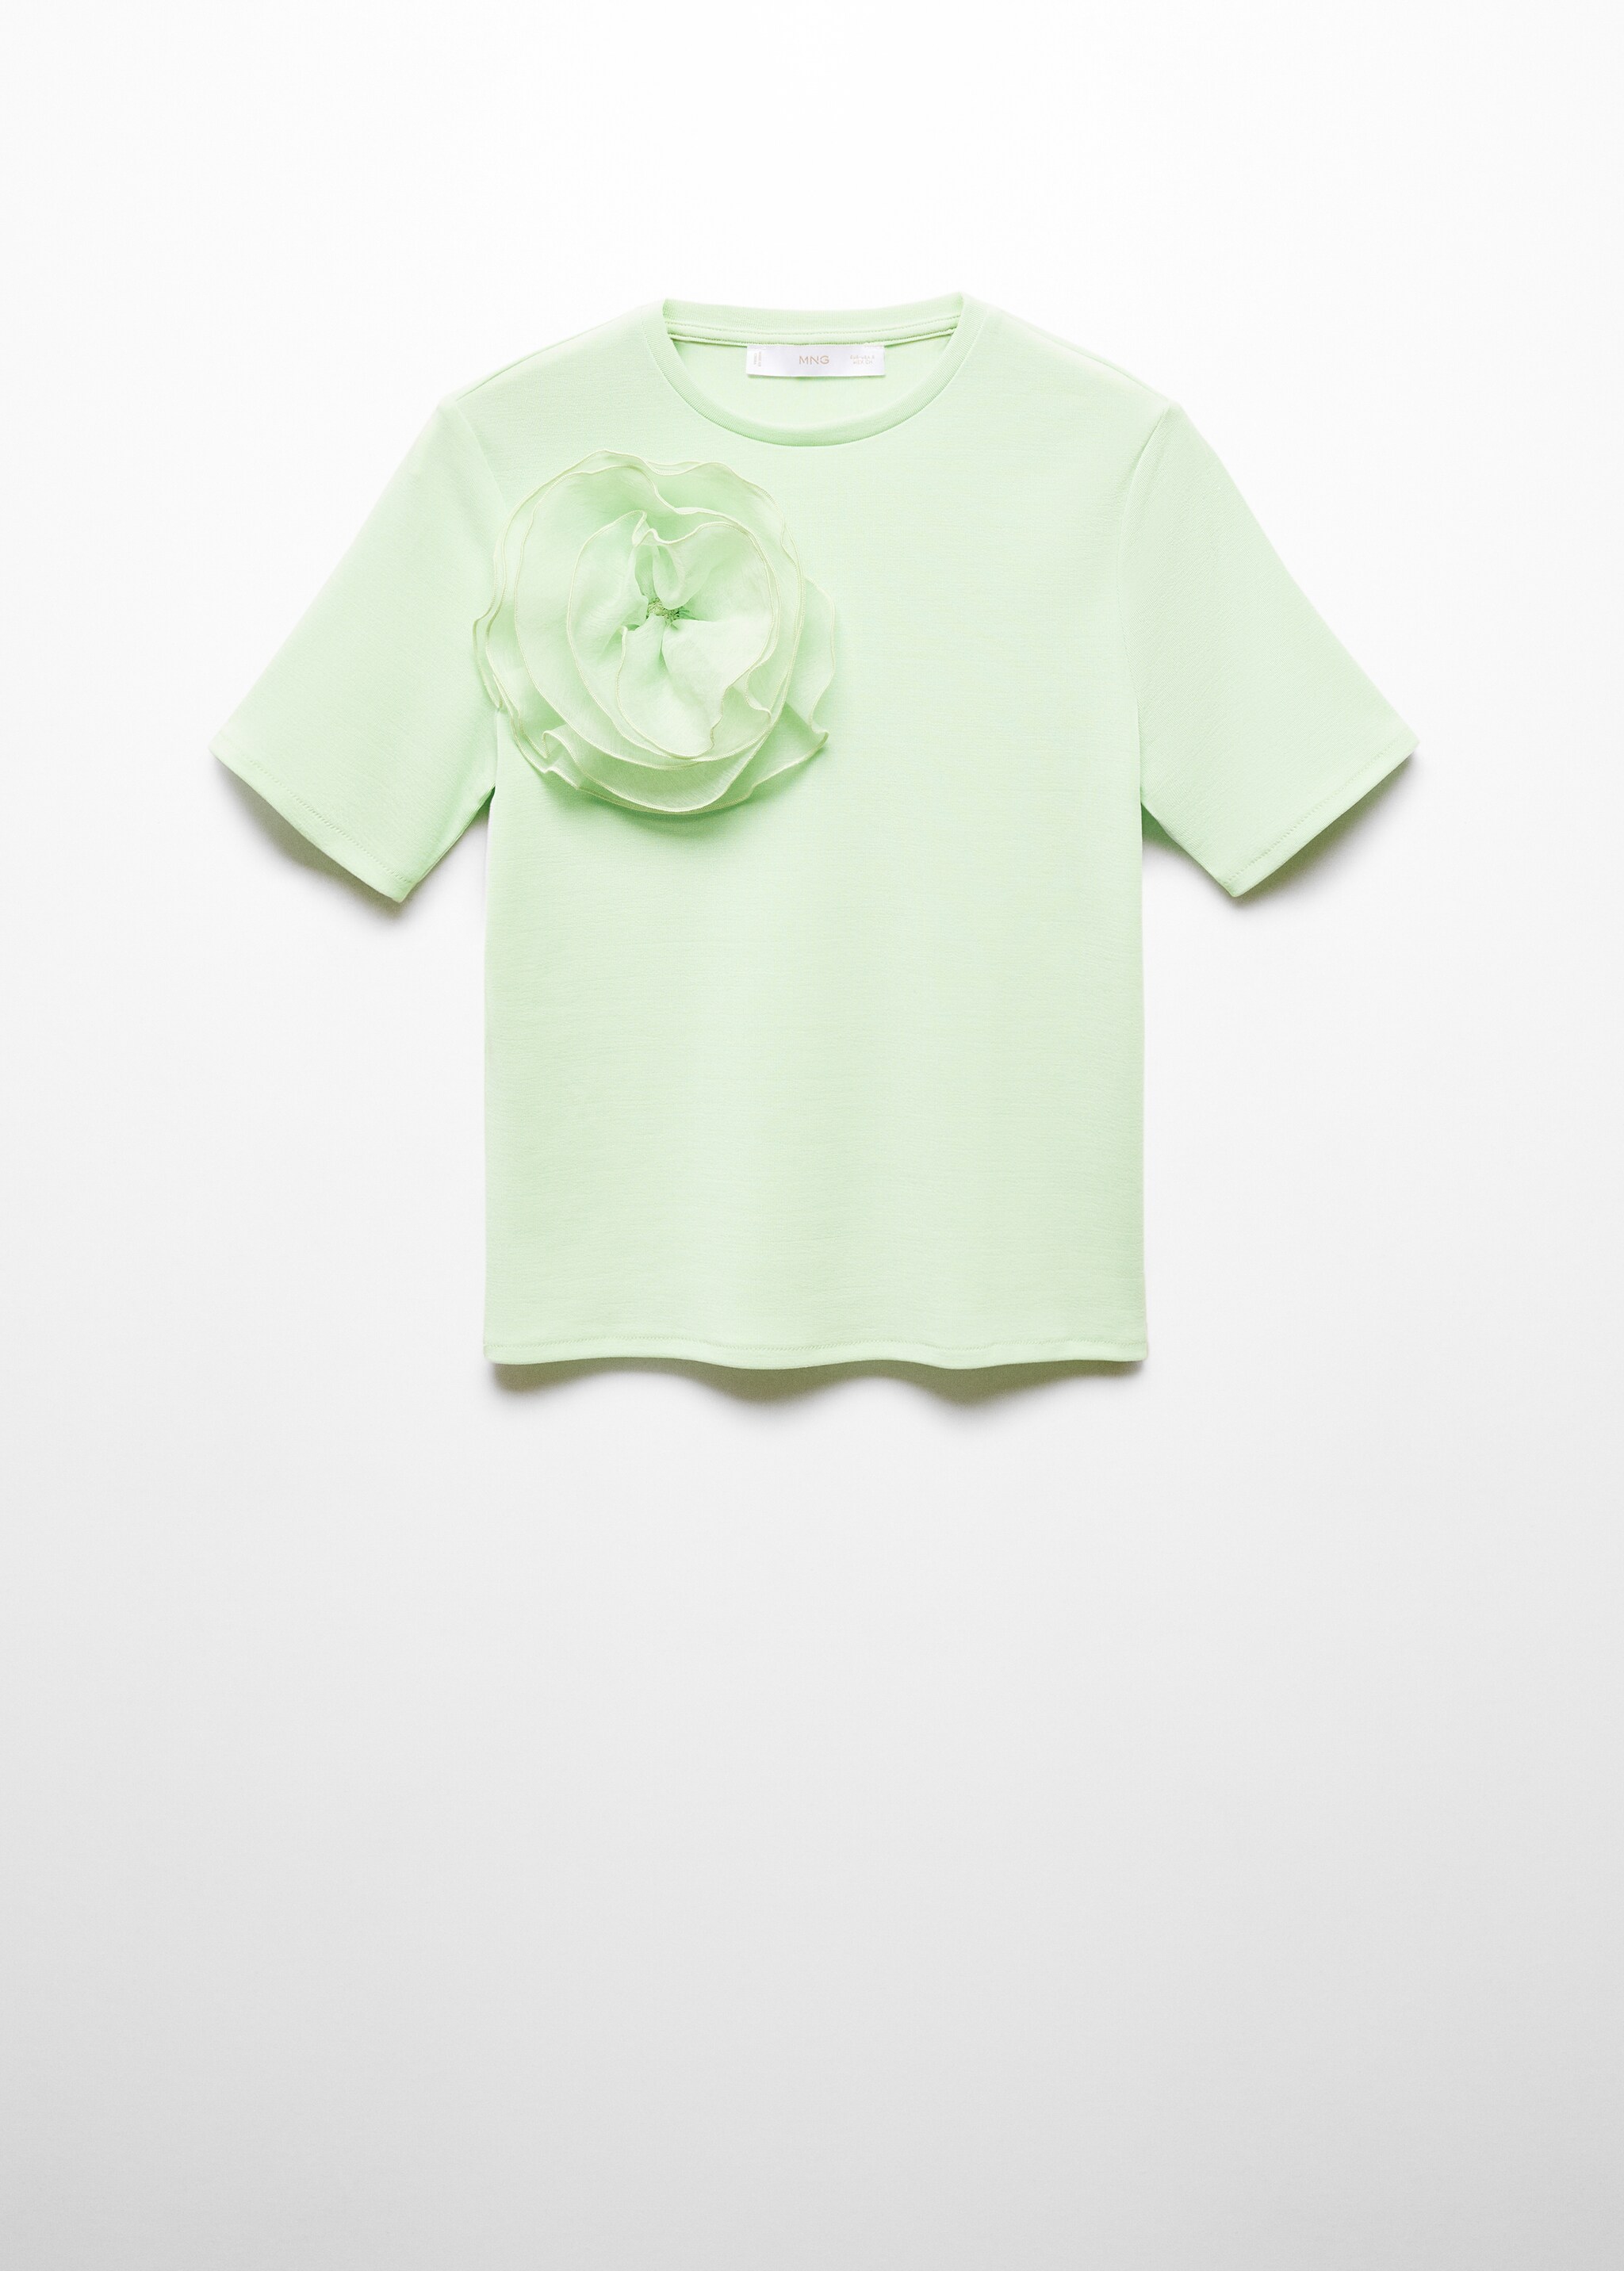 T-shirt dettaglio maxi fiore - Articolo senza modello